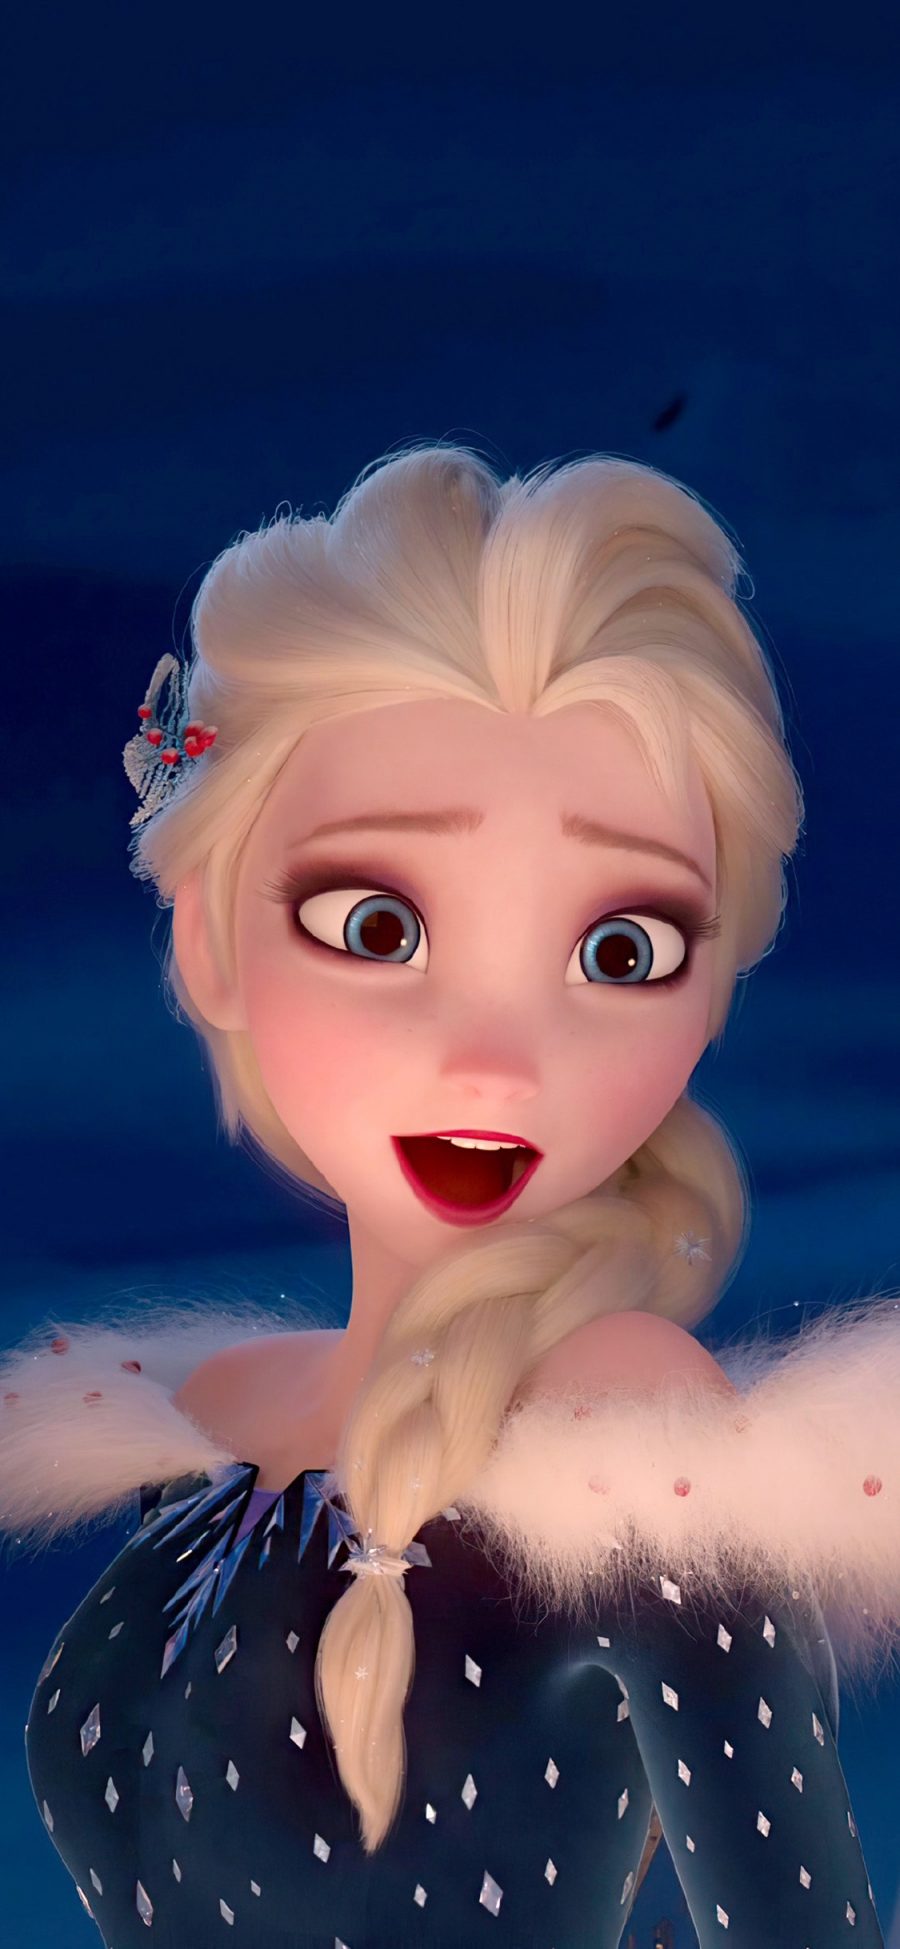 [2436×1125]迪士尼 冰雪奇缘 艾莎公主 Elsa 苹果手机动漫壁纸图片